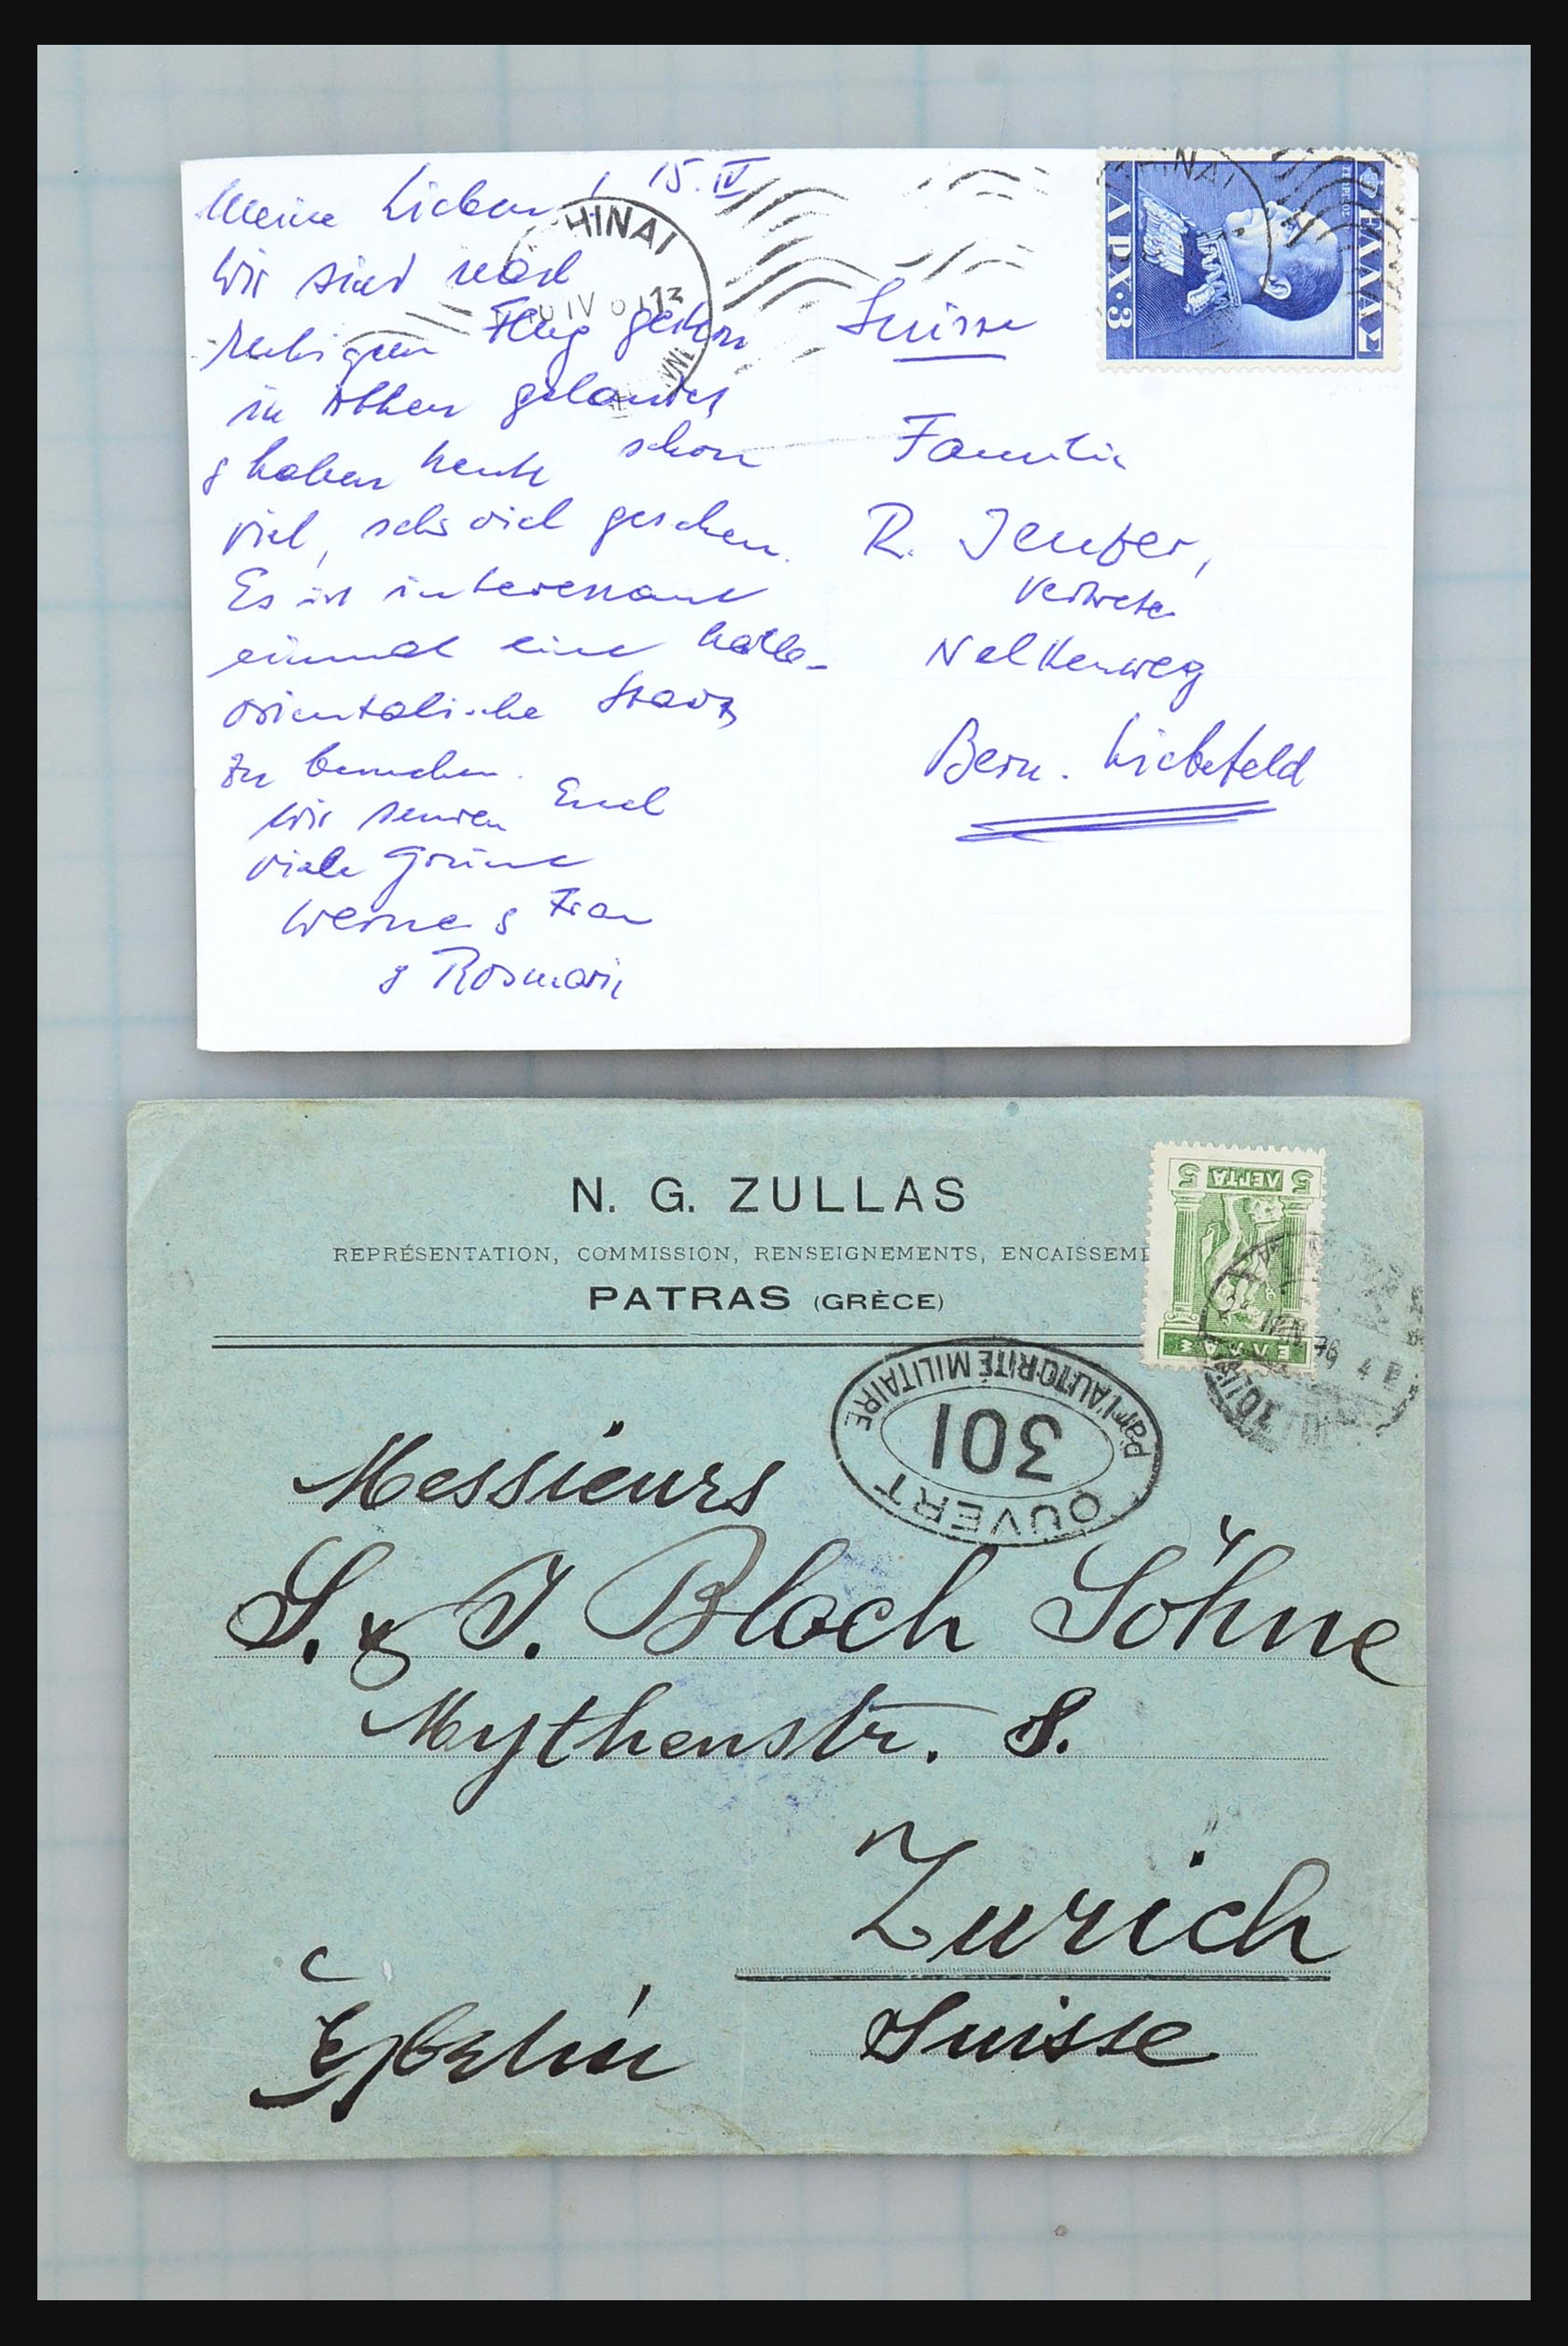 31358 032 - 31358 Portugal/Luxemburg/Griekenland brieven 1880-1960.